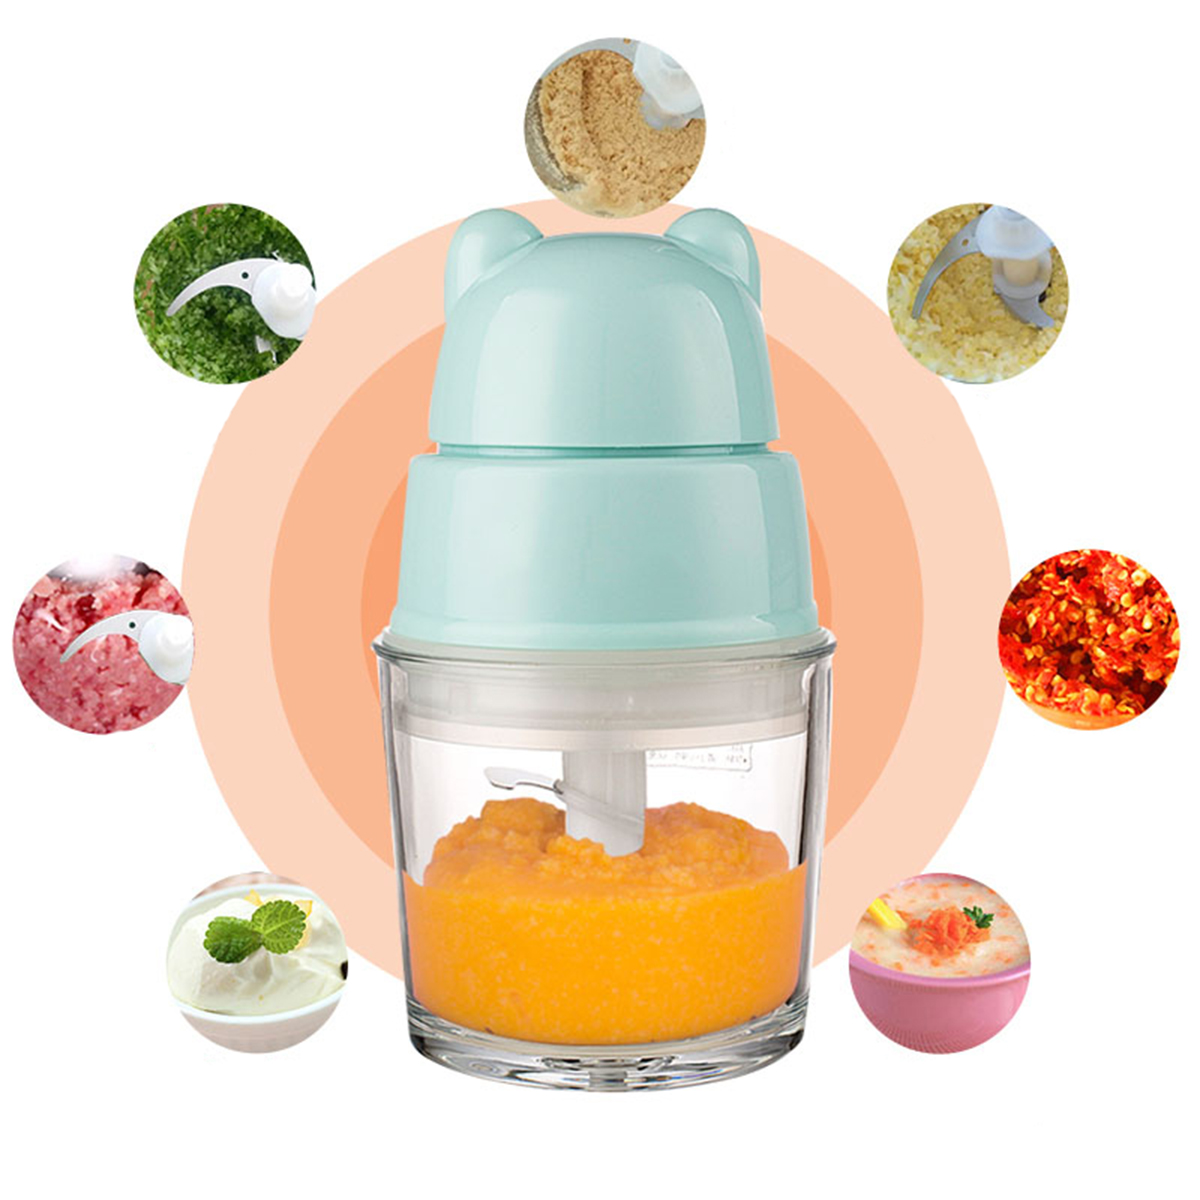 Baby-Food-Maker-Electric-Chopper-Vegetable-Fruit-Meat-Mixer-Grinder-Blender-Slicer-1445900-2